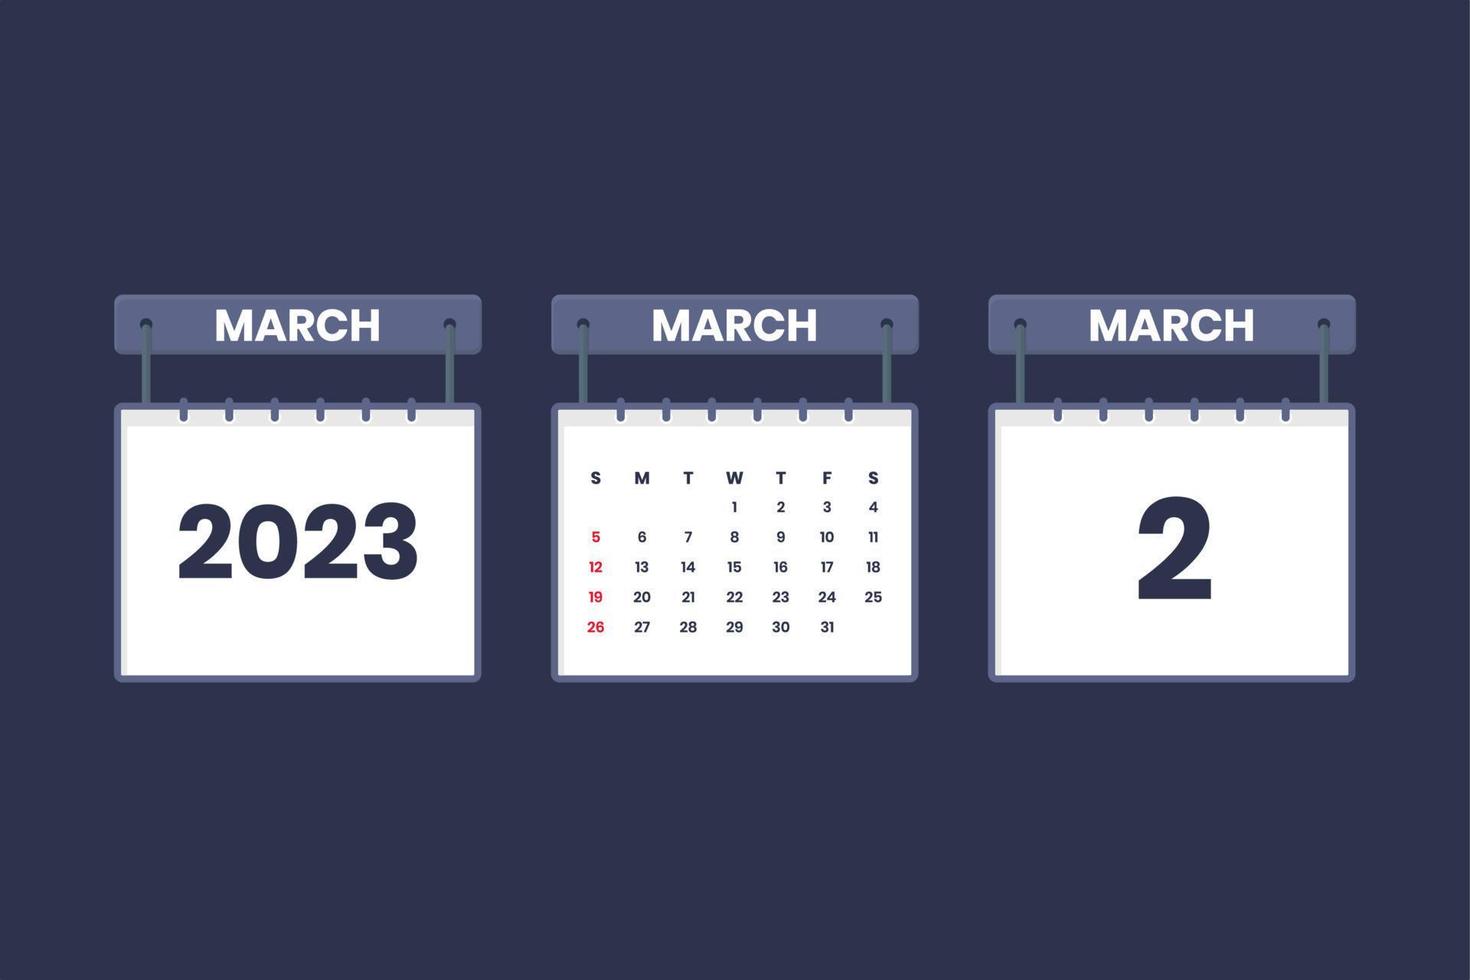 2 Mars 2023 kalender ikon för schema, utnämning, Viktig datum begrepp vektor